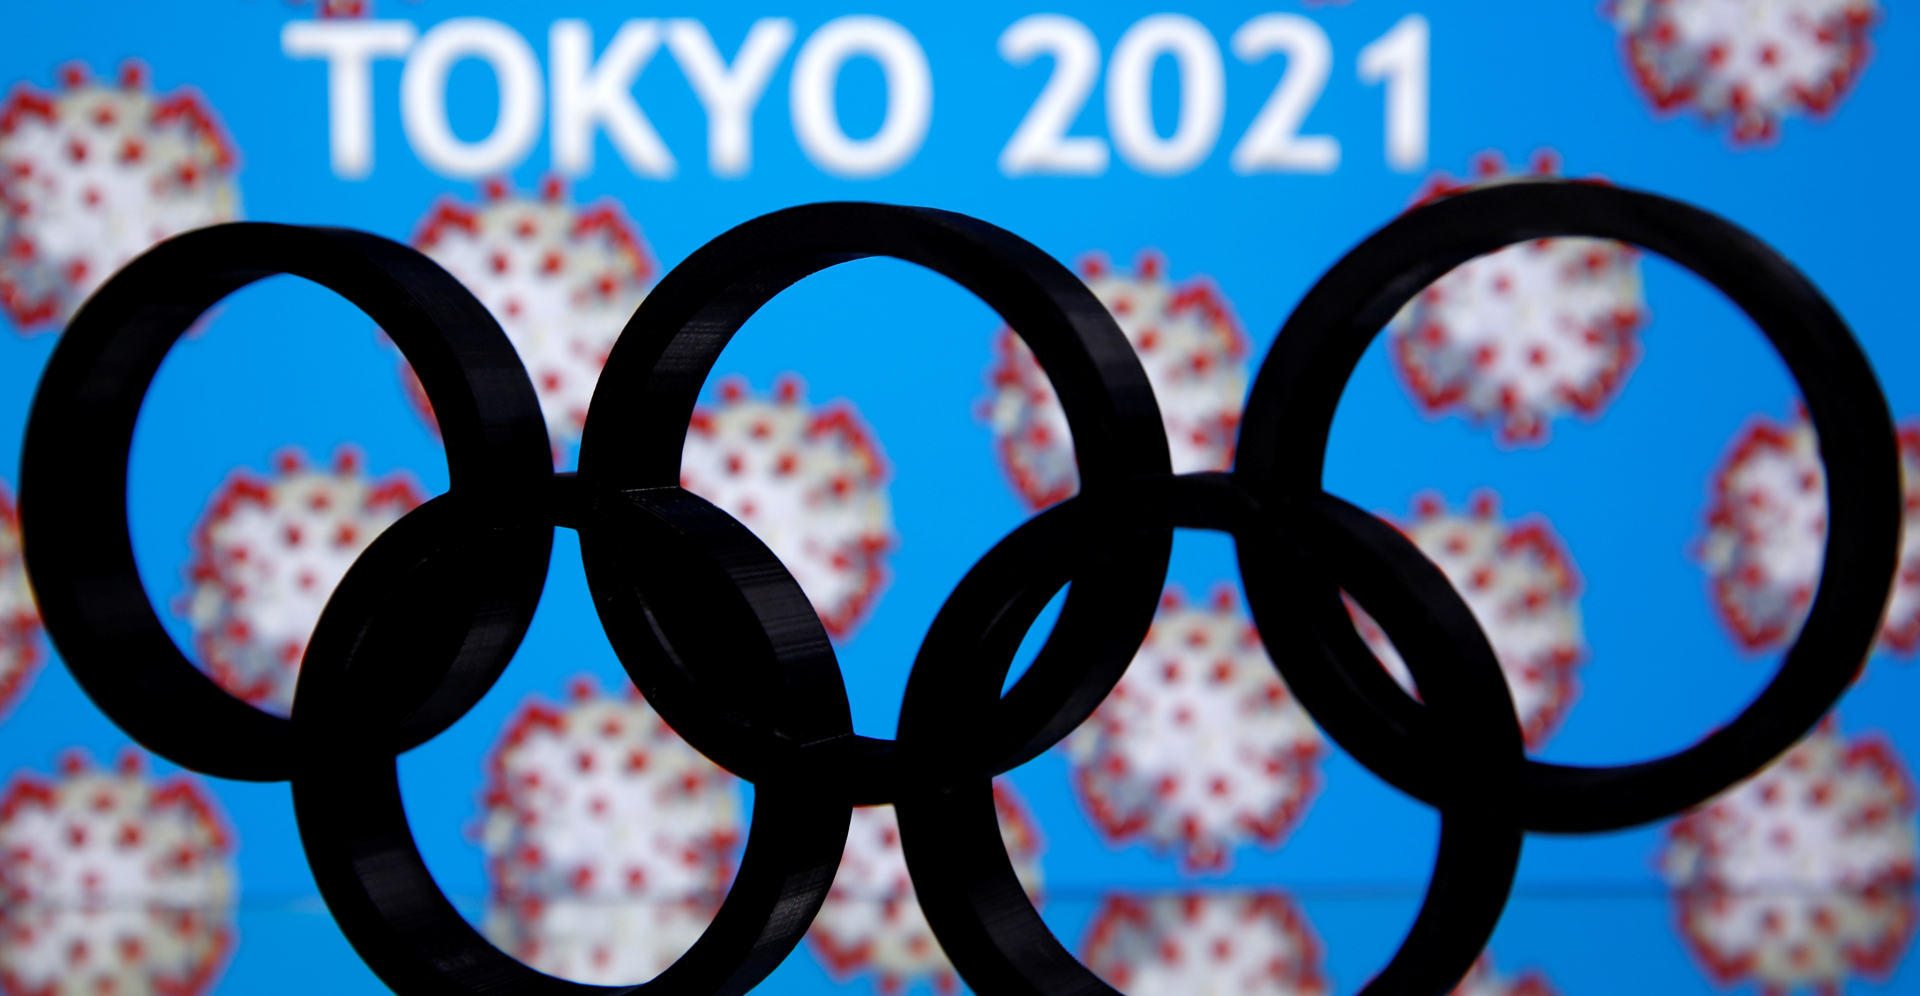 Decizia amanarii Jocurilor Olimpice de vara de la Tokyo pentru anul viitor este mai degraba una de business decat una sportiva